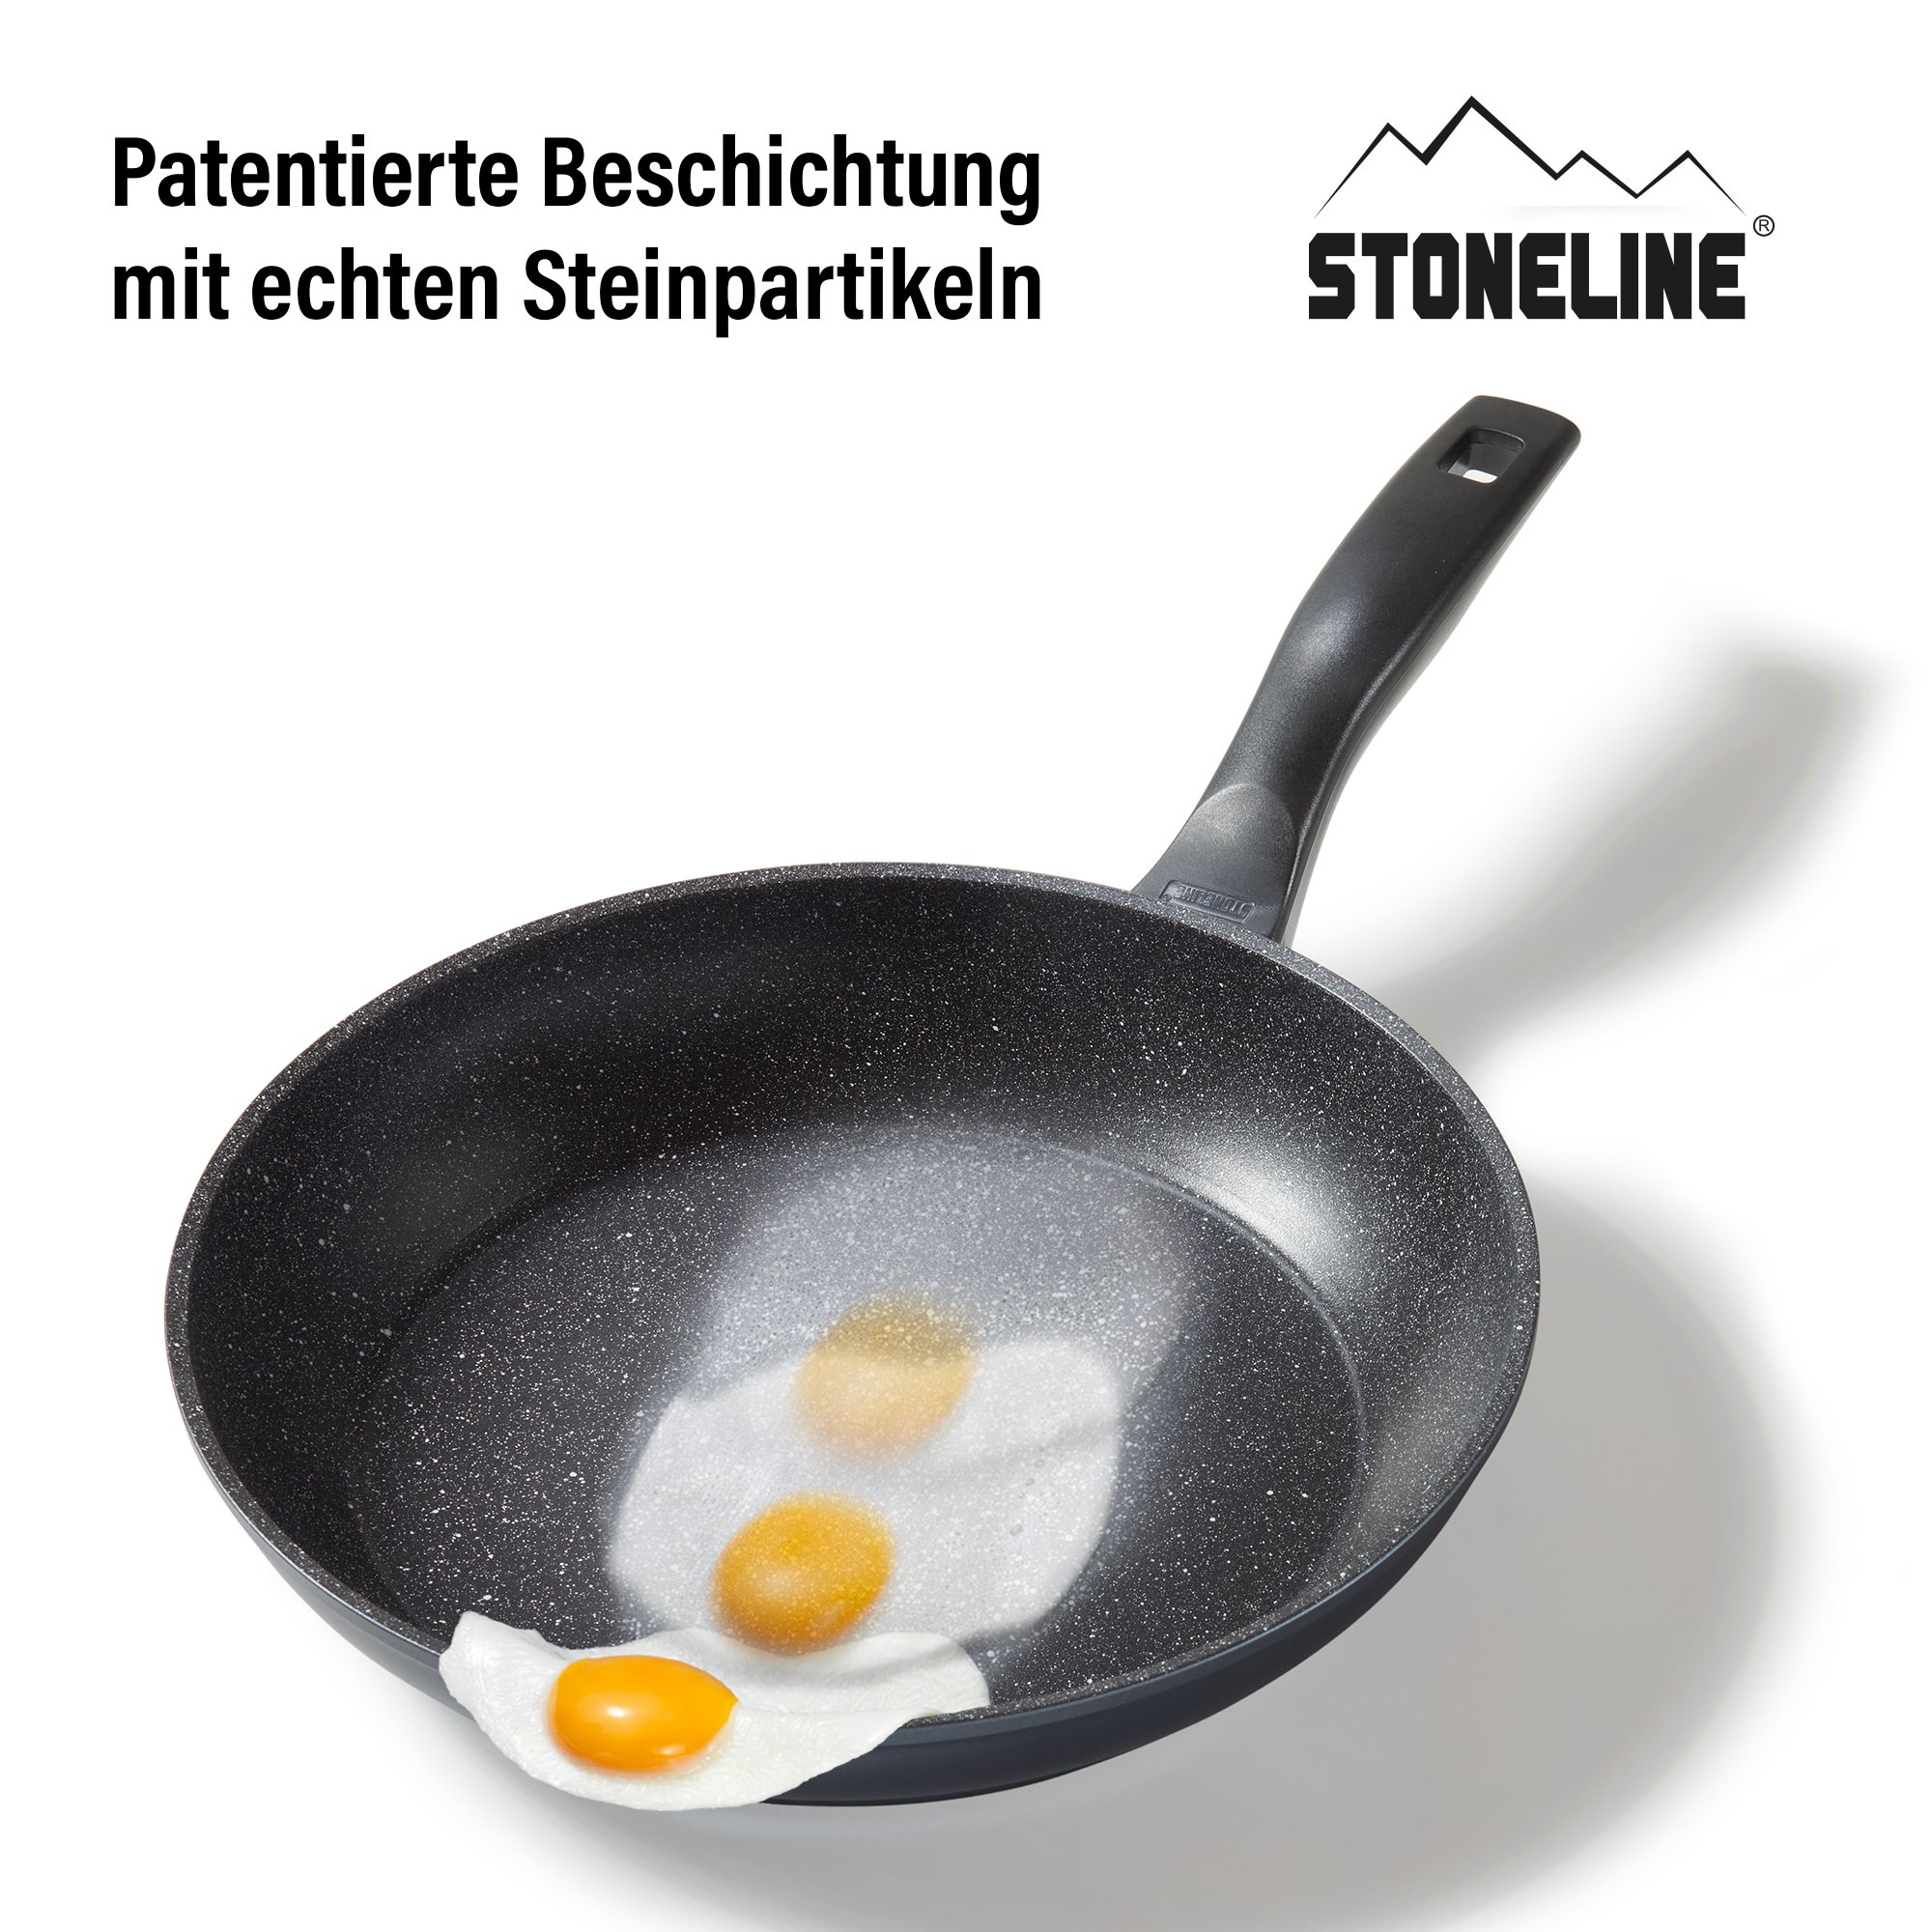 STONELINE® Padella 28 cm, Made in Germany, padella con rivestimento antiaderente, adatta all'induzione